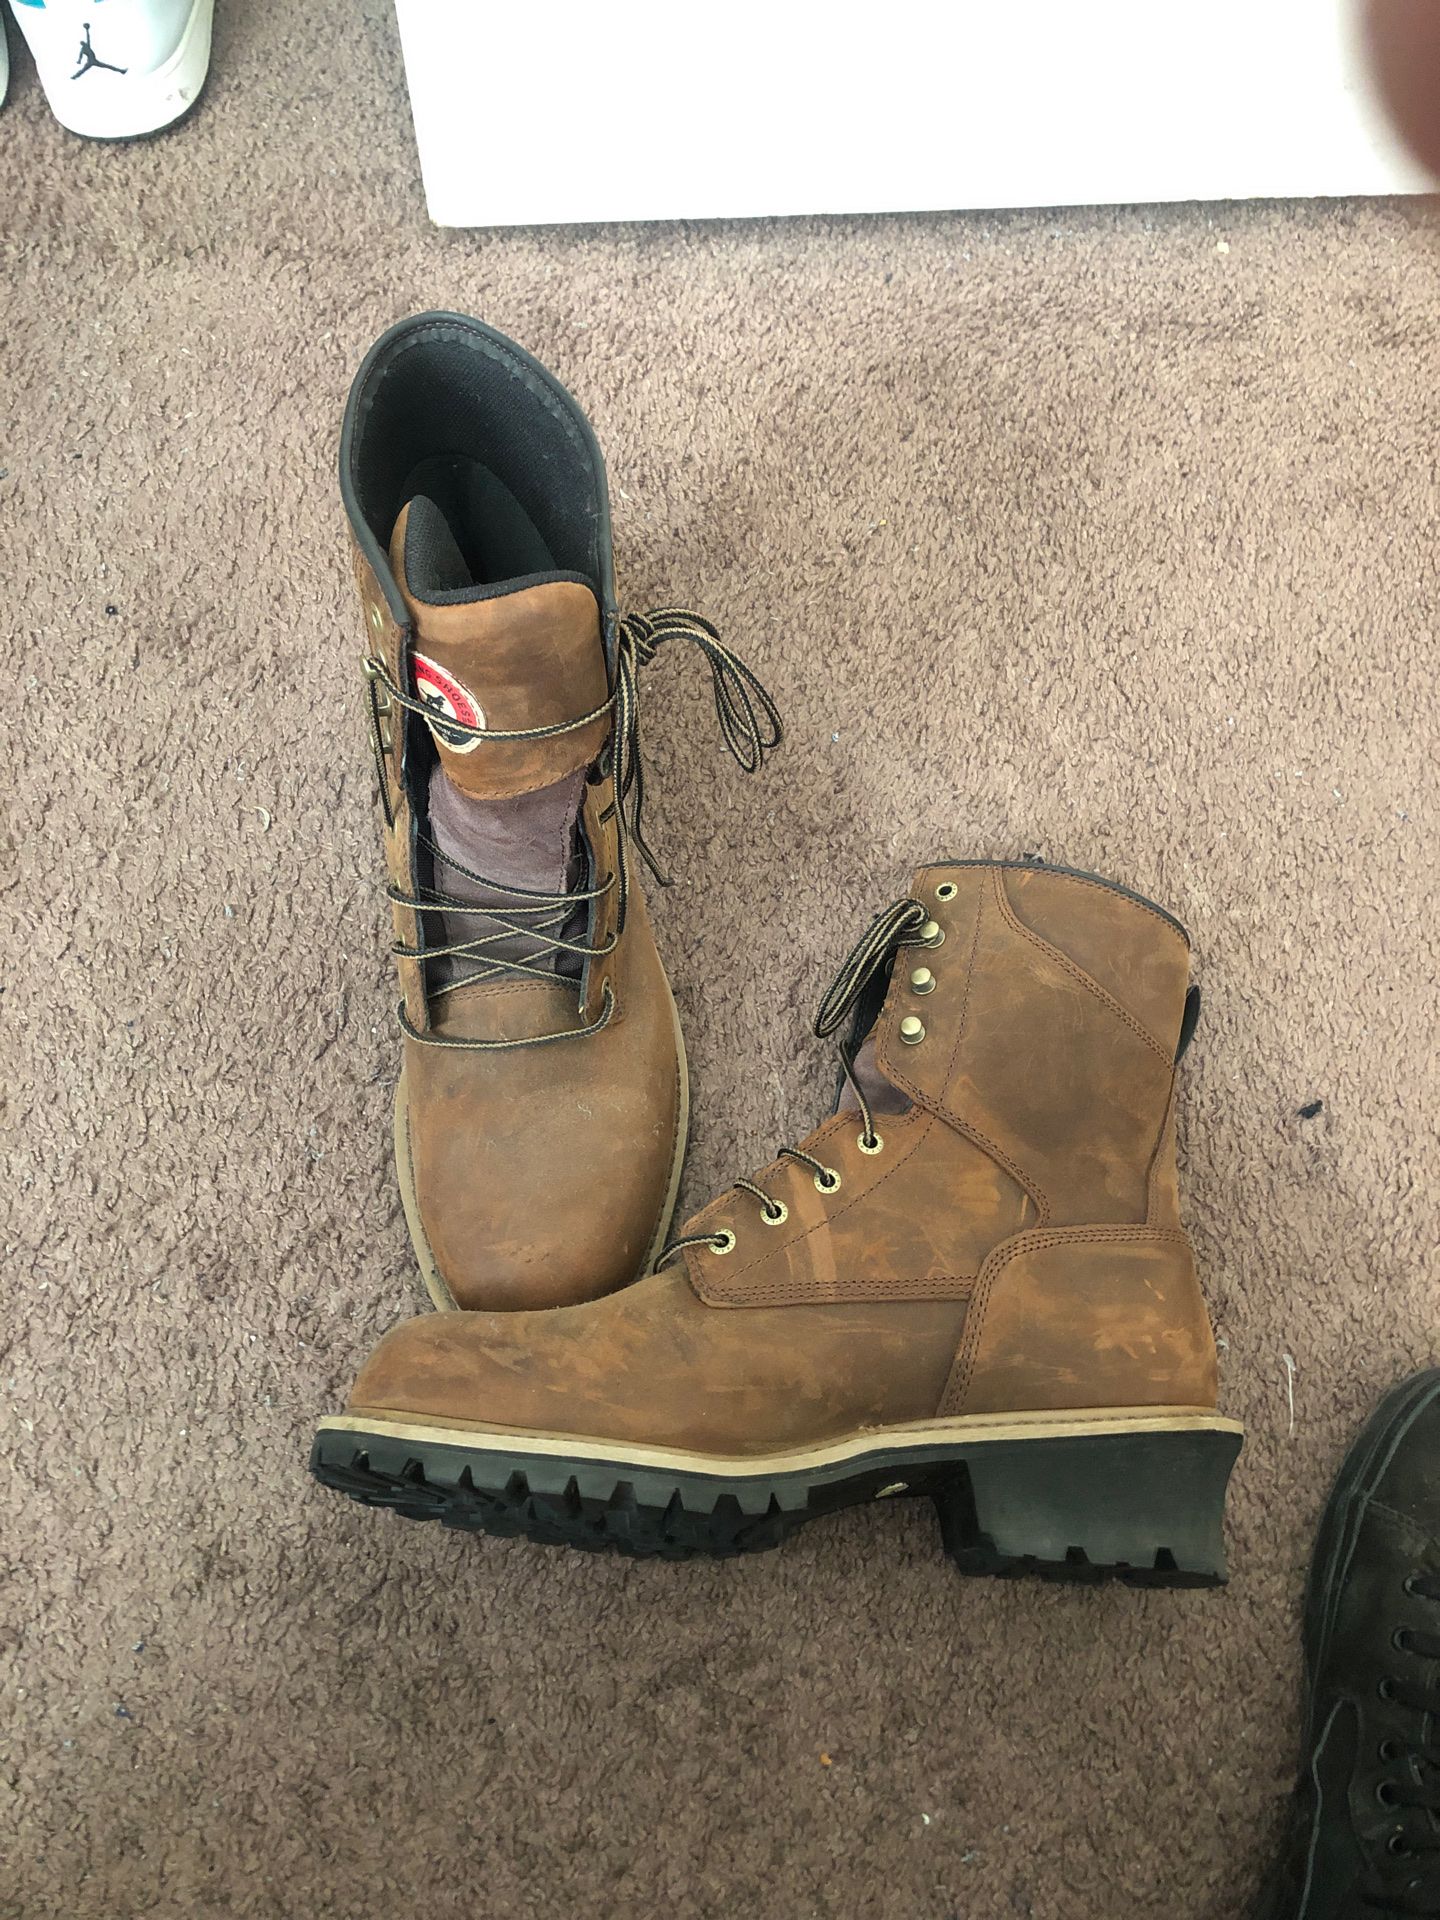 Redwing work boots waterproof Steel toe boots